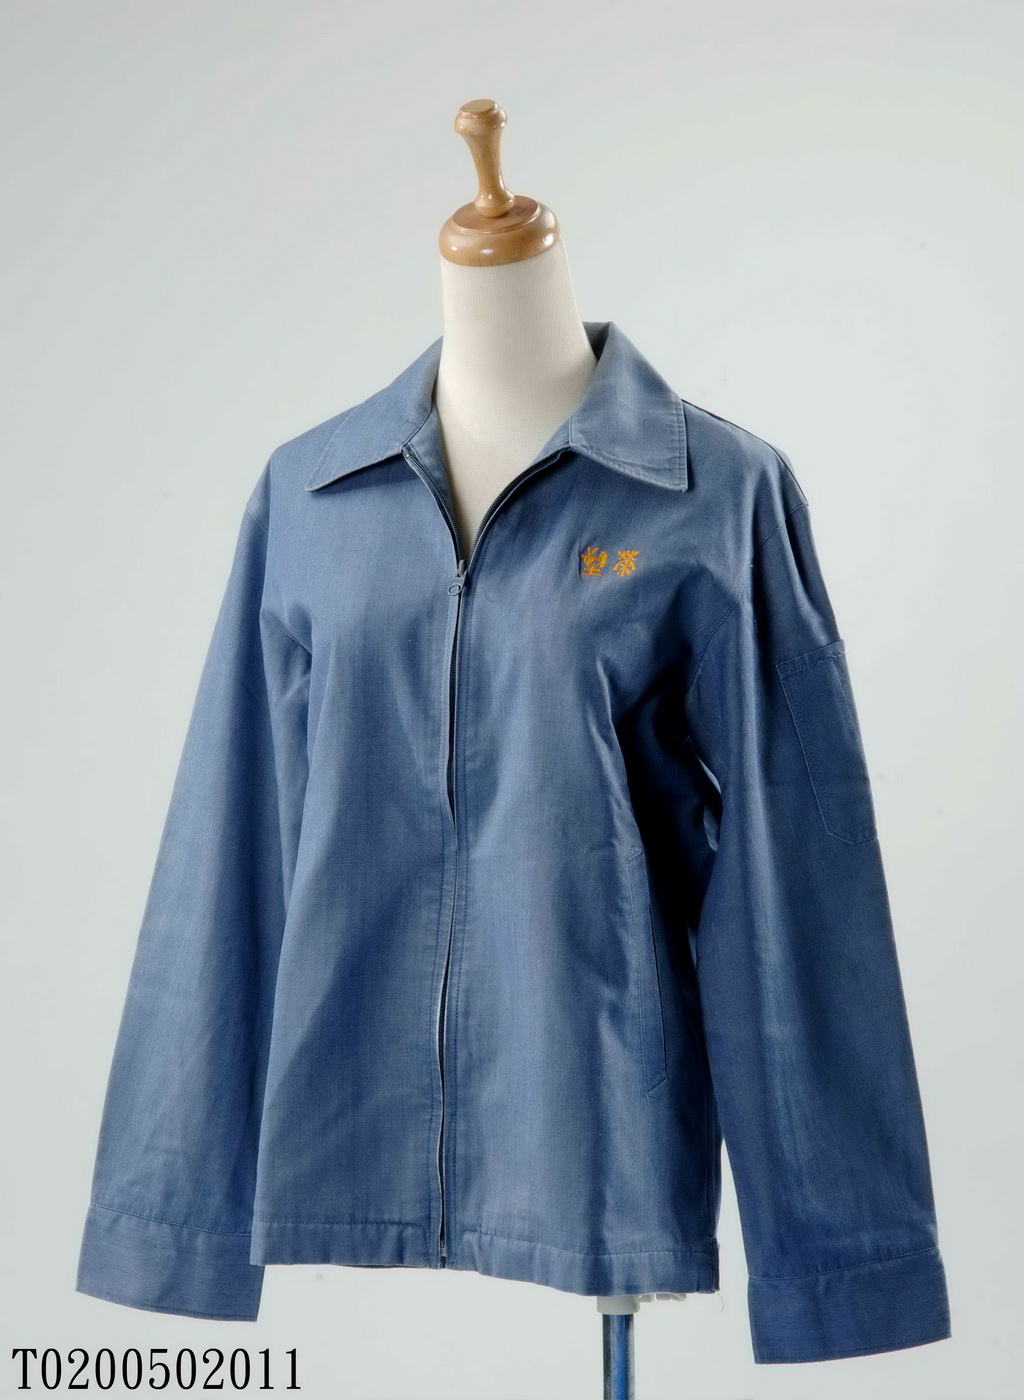 The female uniform of Rongsu (jacket)